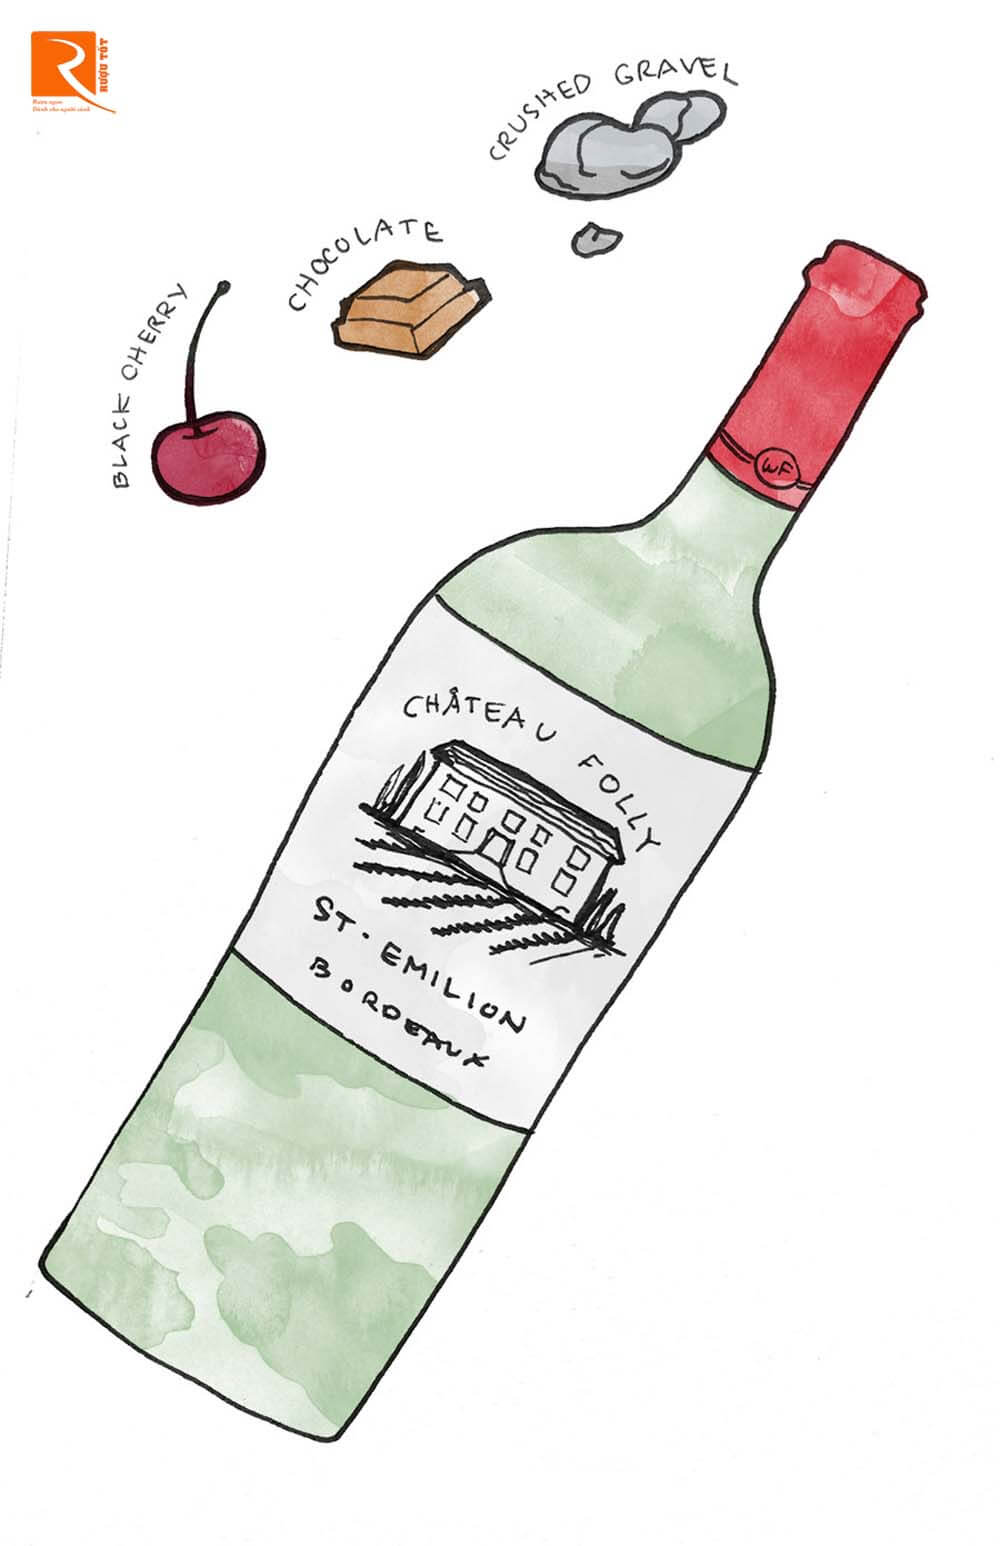 Saint-Émilion và Pomerol có nhiều nhà sản xuất cung cấp rượu vang nổi bật.